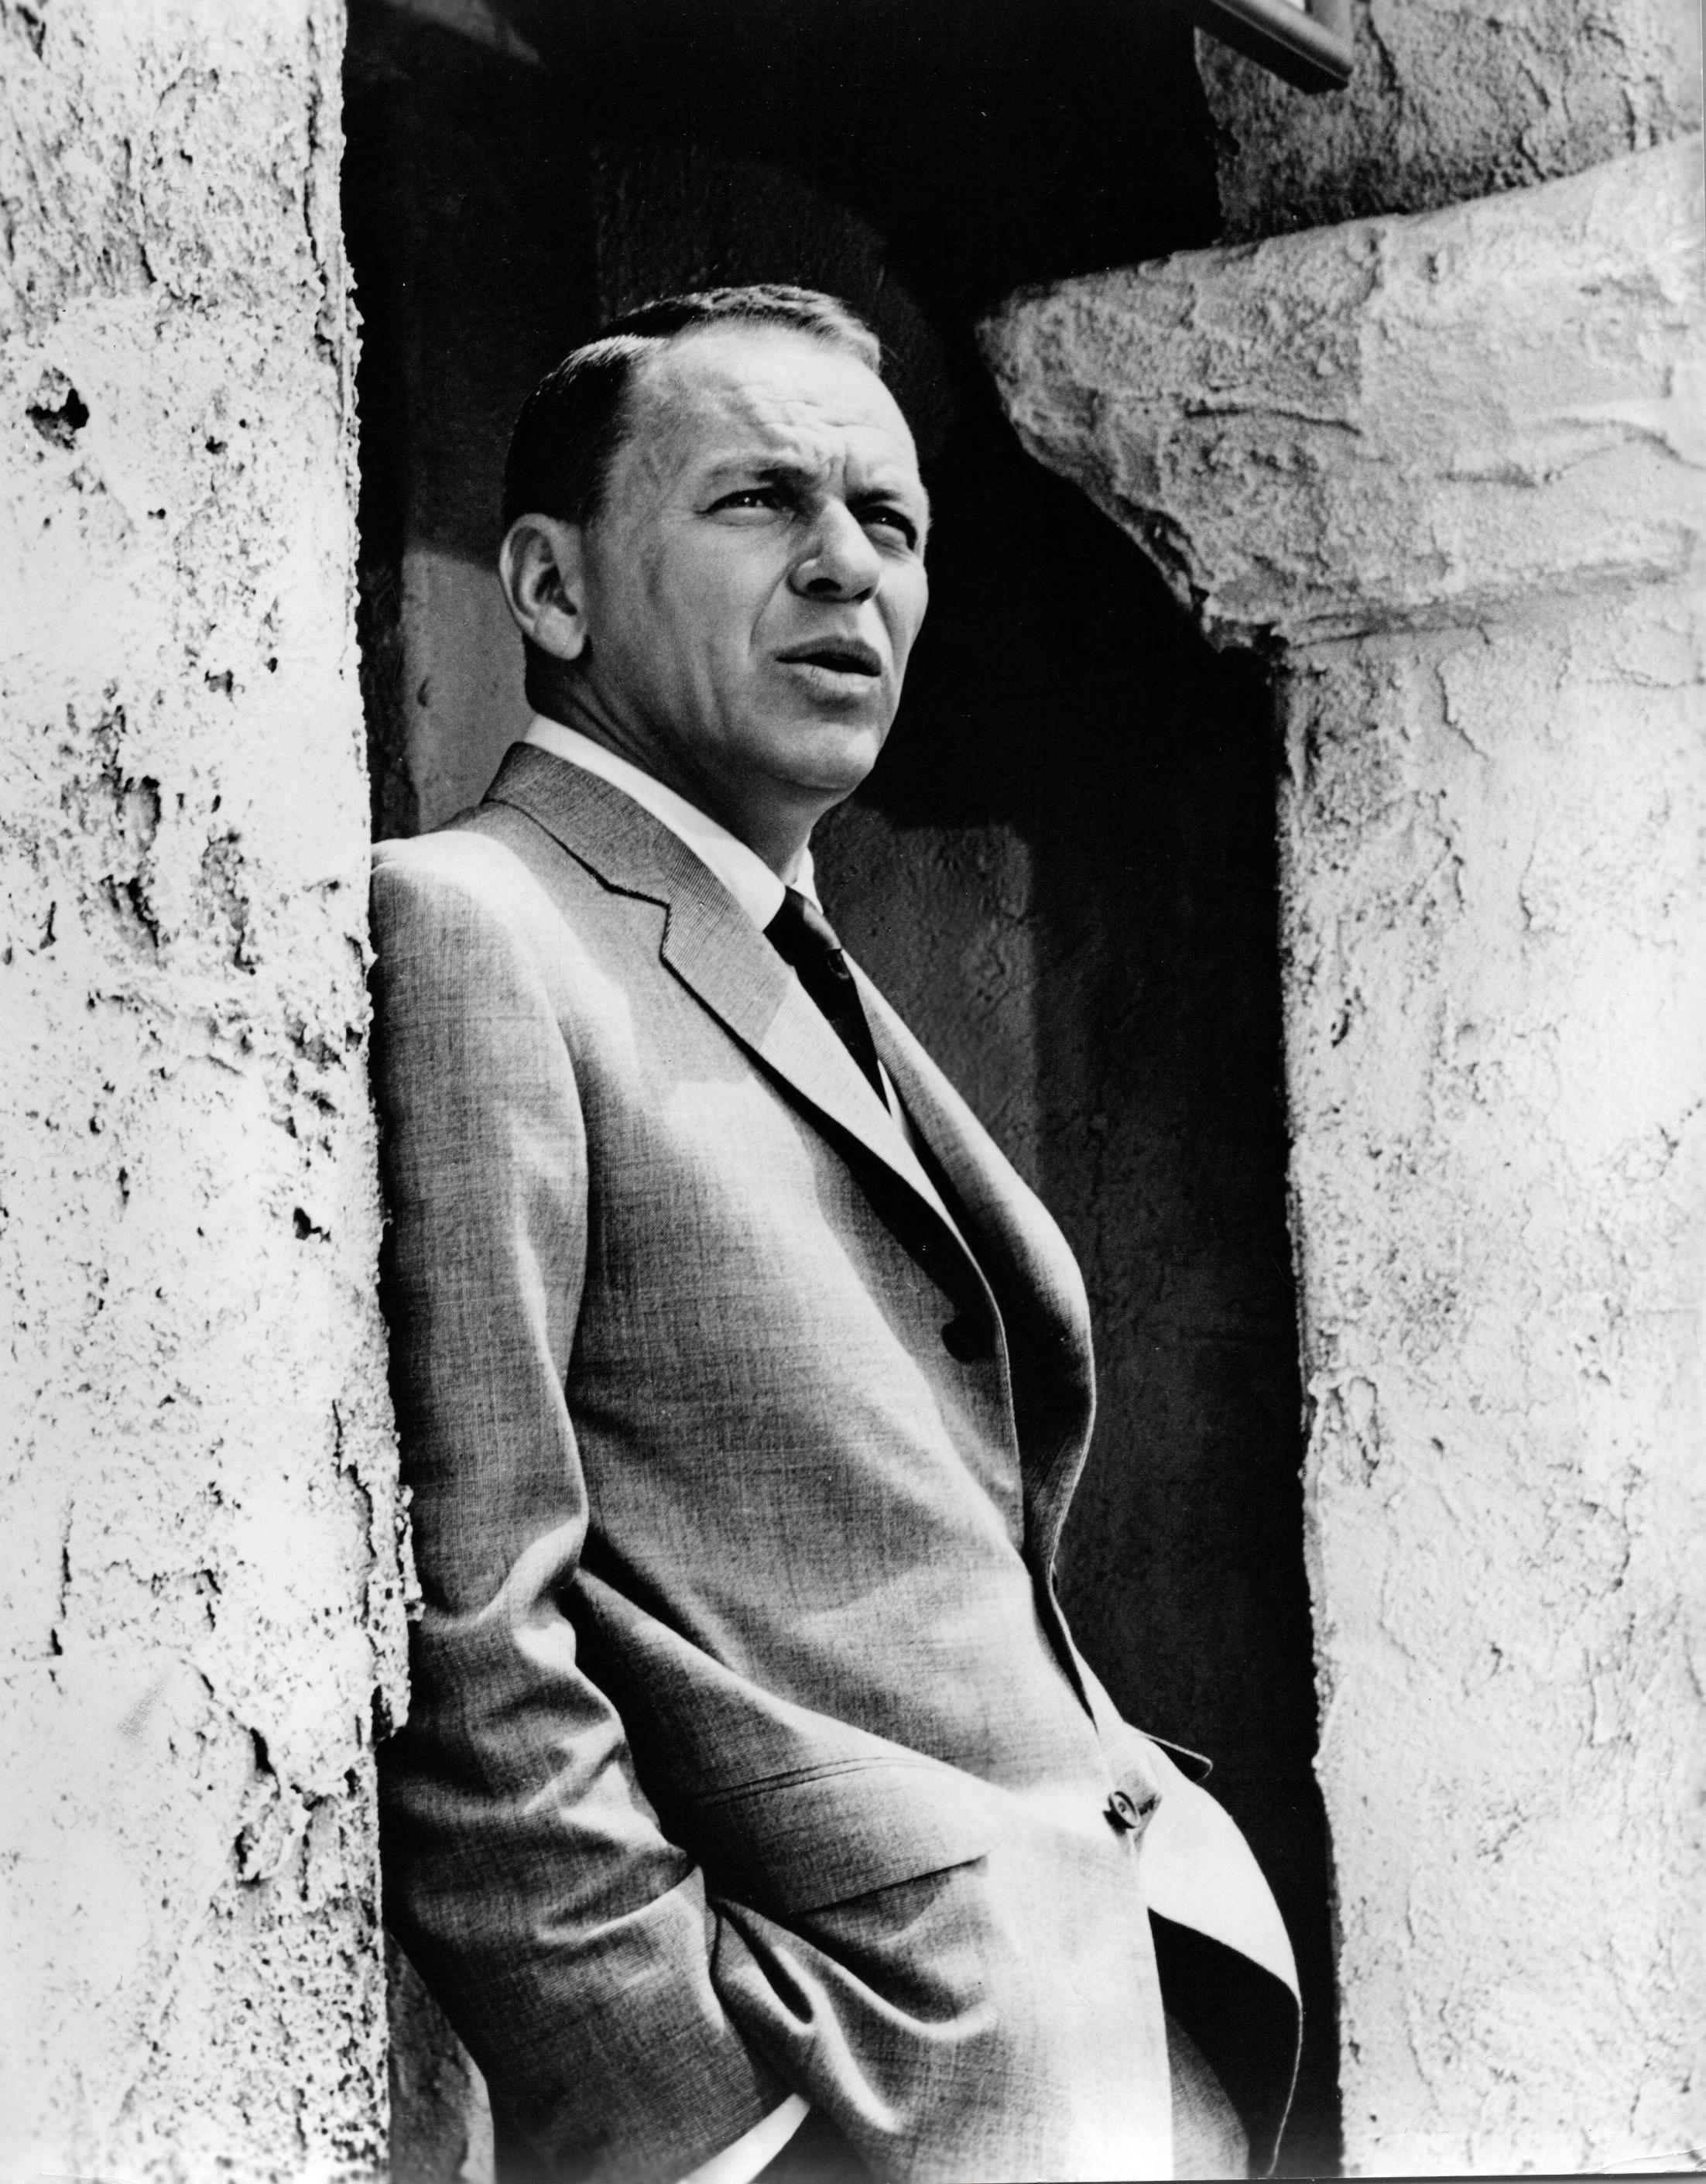 Unknown Portrait Photograph - Frank Sinatra Posing in Suit Vintage Original Photograph